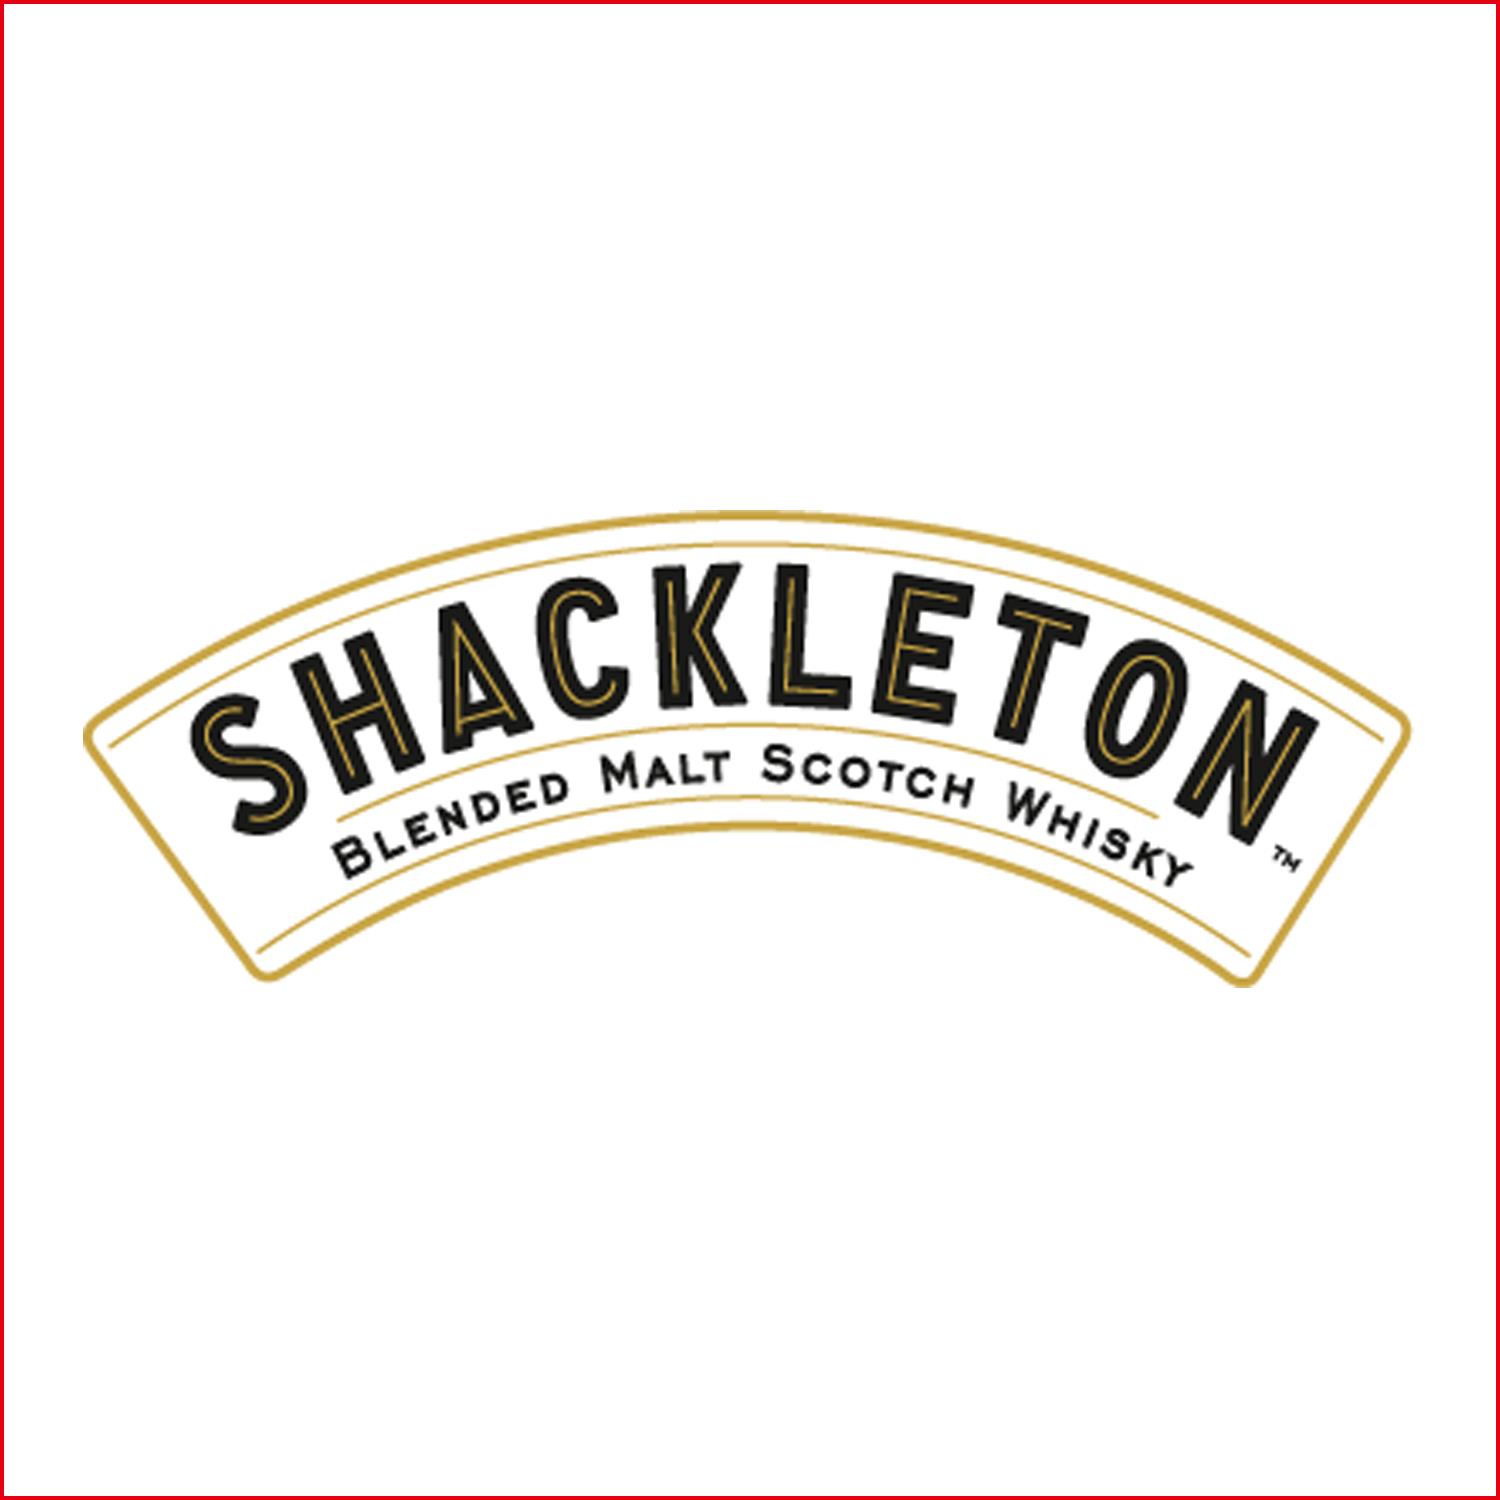 薛克頓 Shackleton